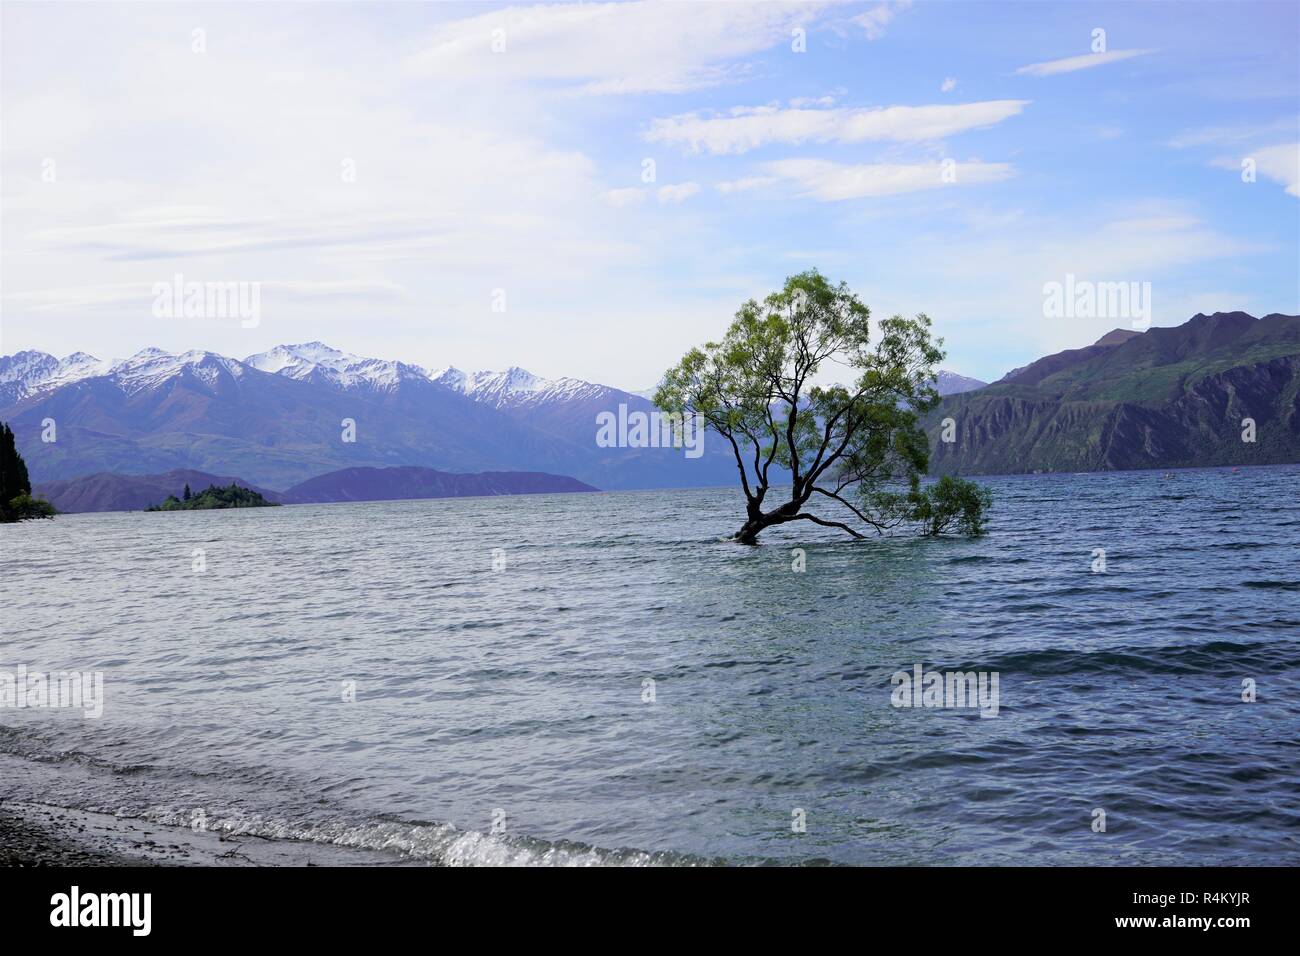 Baum im See, umgeben von Bergen, Lake Wanaka, Neuseeland Südinsel Stockfoto